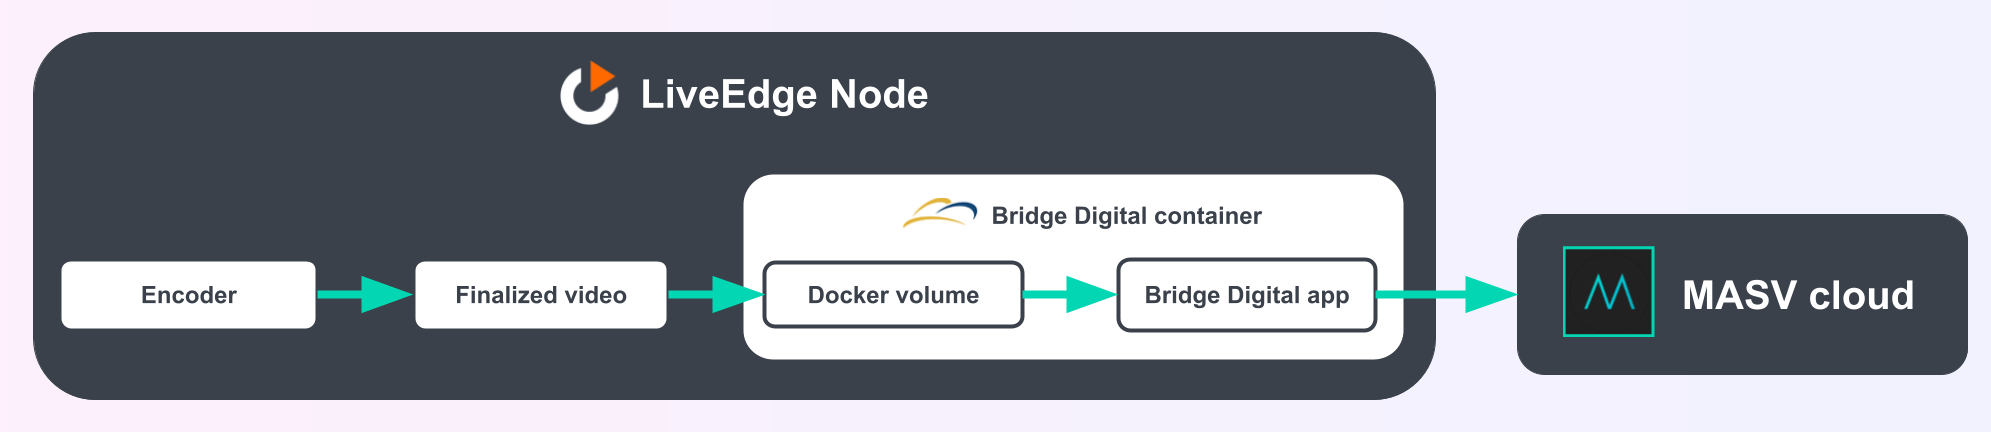 Diagramm der digitalen Anwendungsarchitektur von Bridge